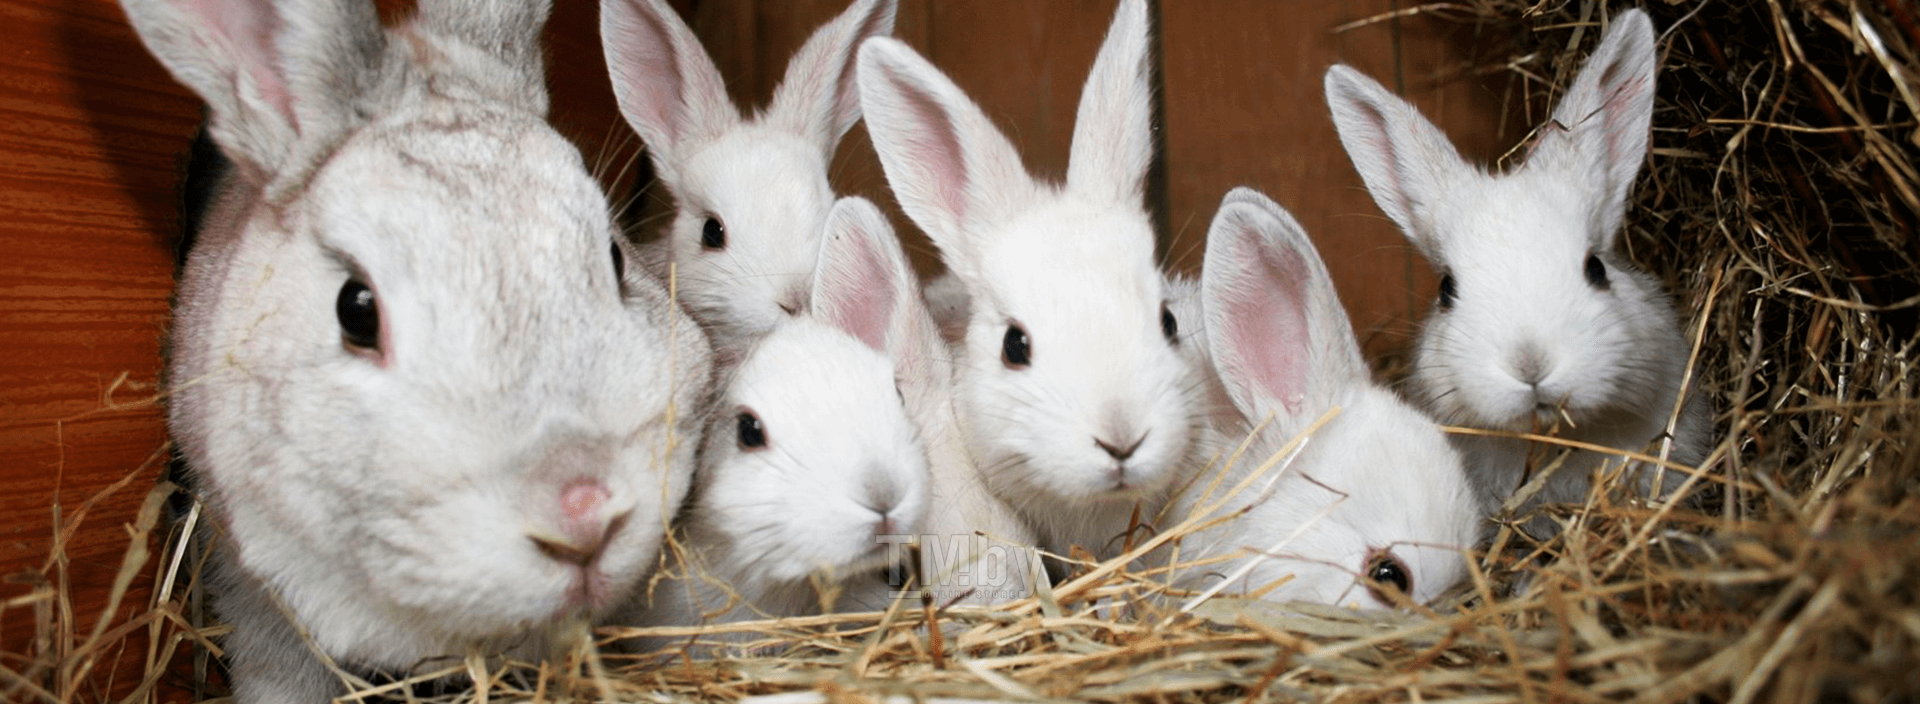 Причины почему крольчиха съедает своих крольчат и как это предотвратить